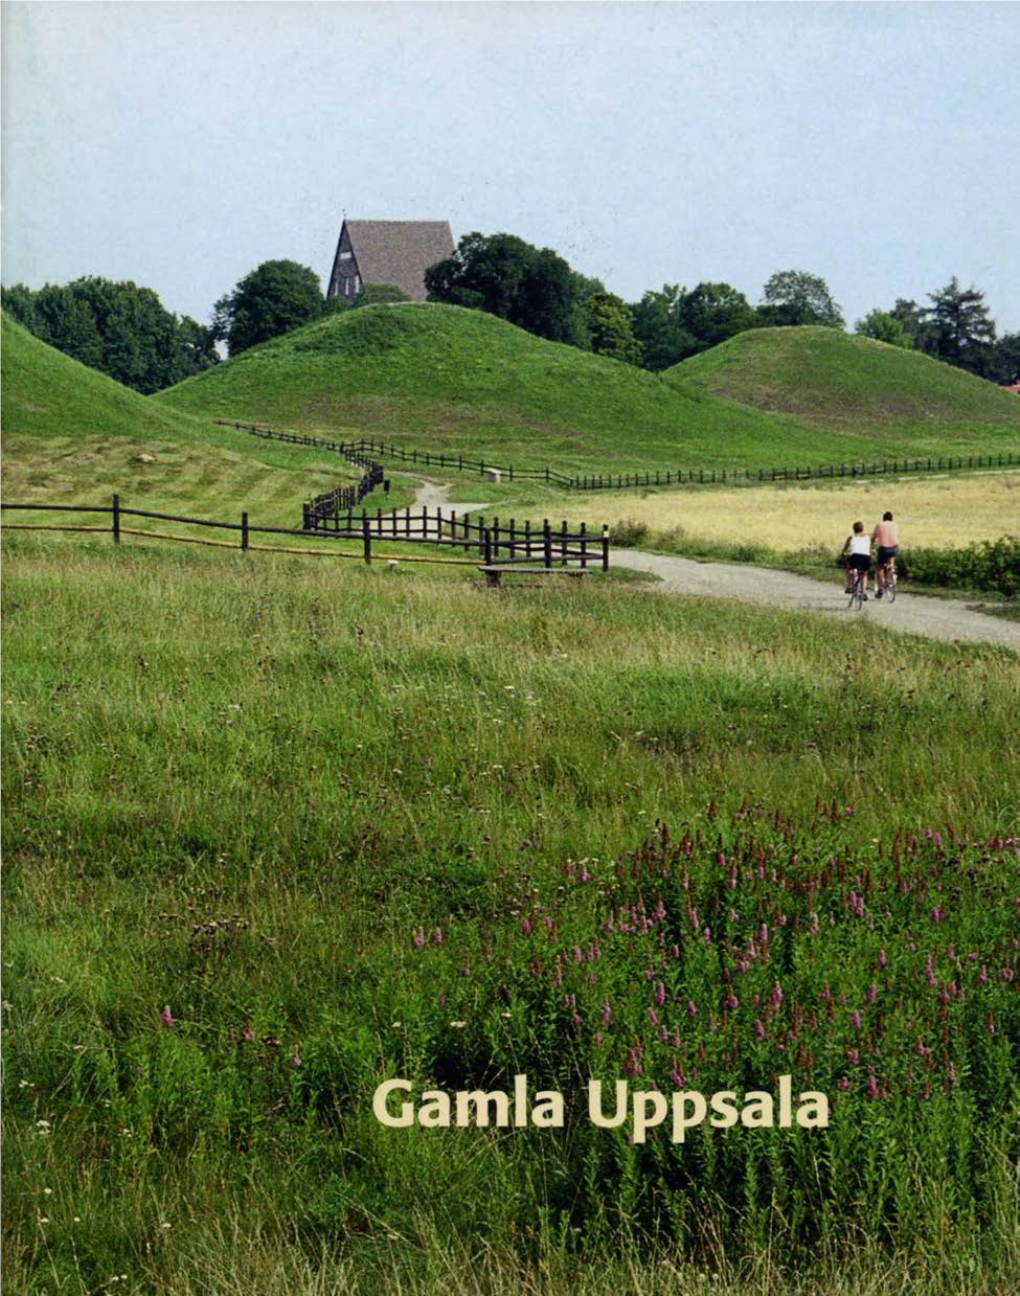 Gamla Uppsala